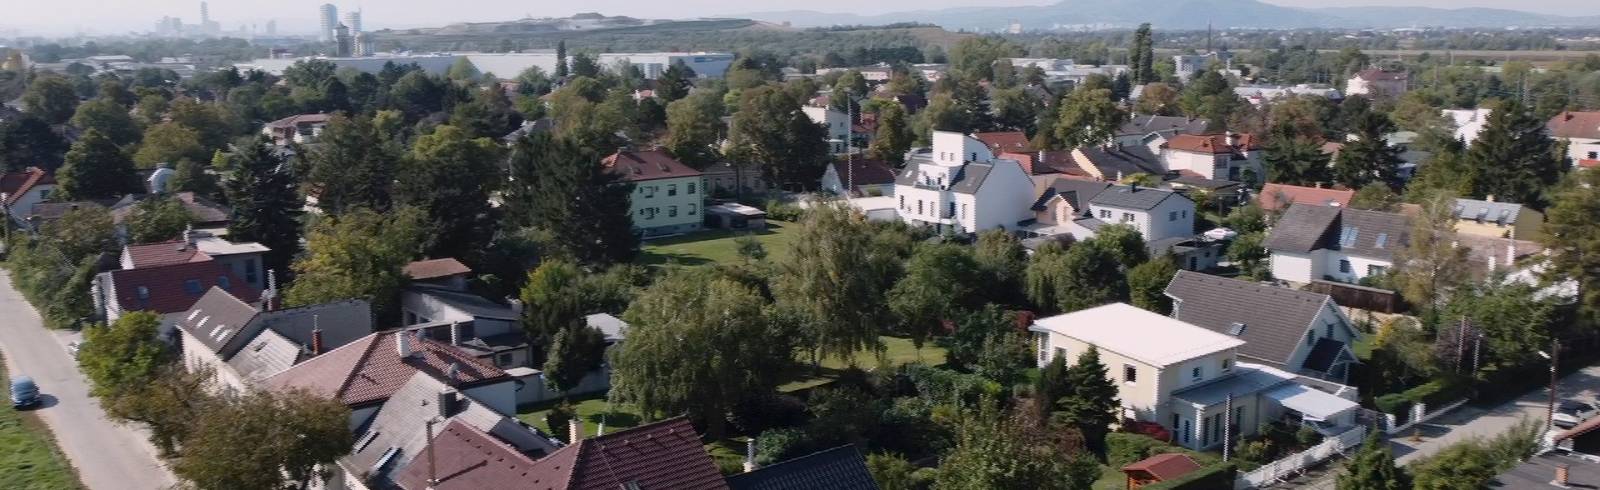 Süssenbrunn: Das Dorf am Ende von Wien